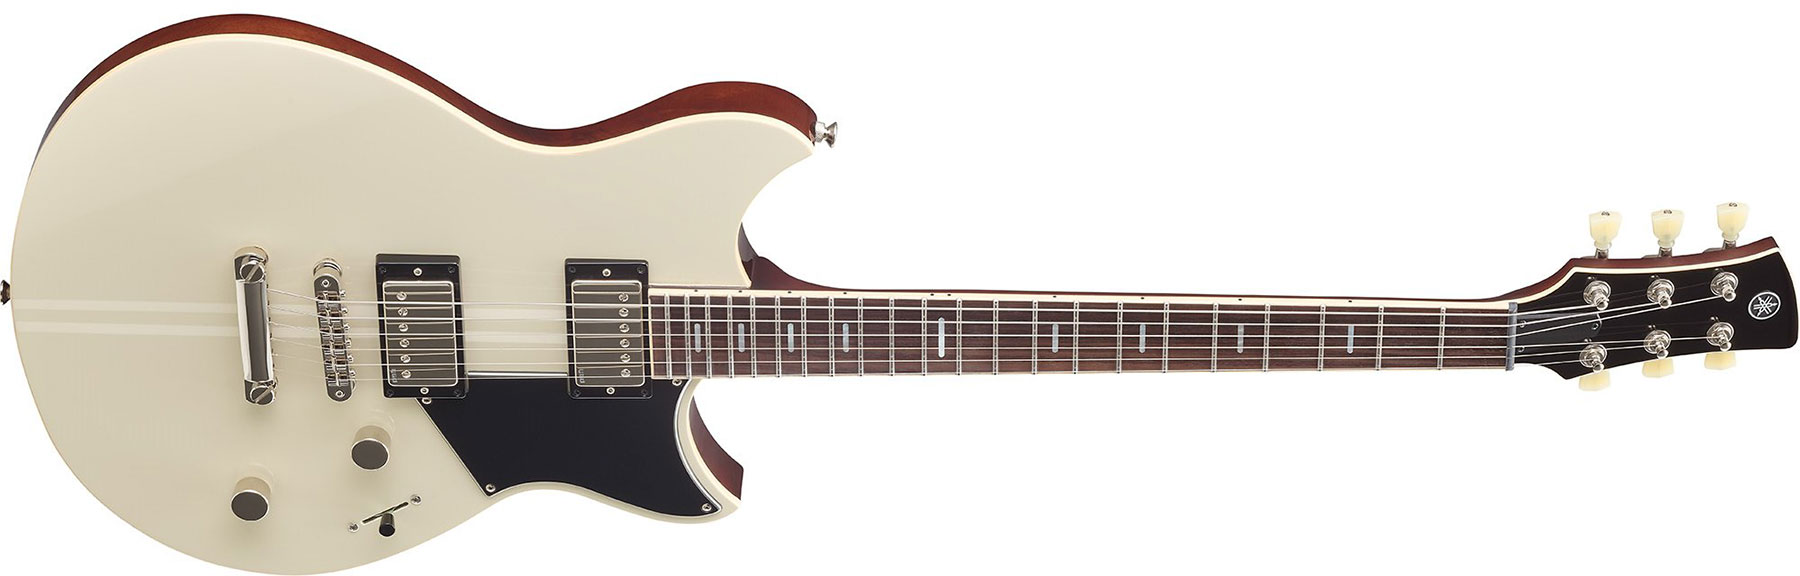 Yamaha Rss20 Revstar Standard Hh Ht Rw - Vintage White - Guitarra eléctrica de doble corte. - Variation 1